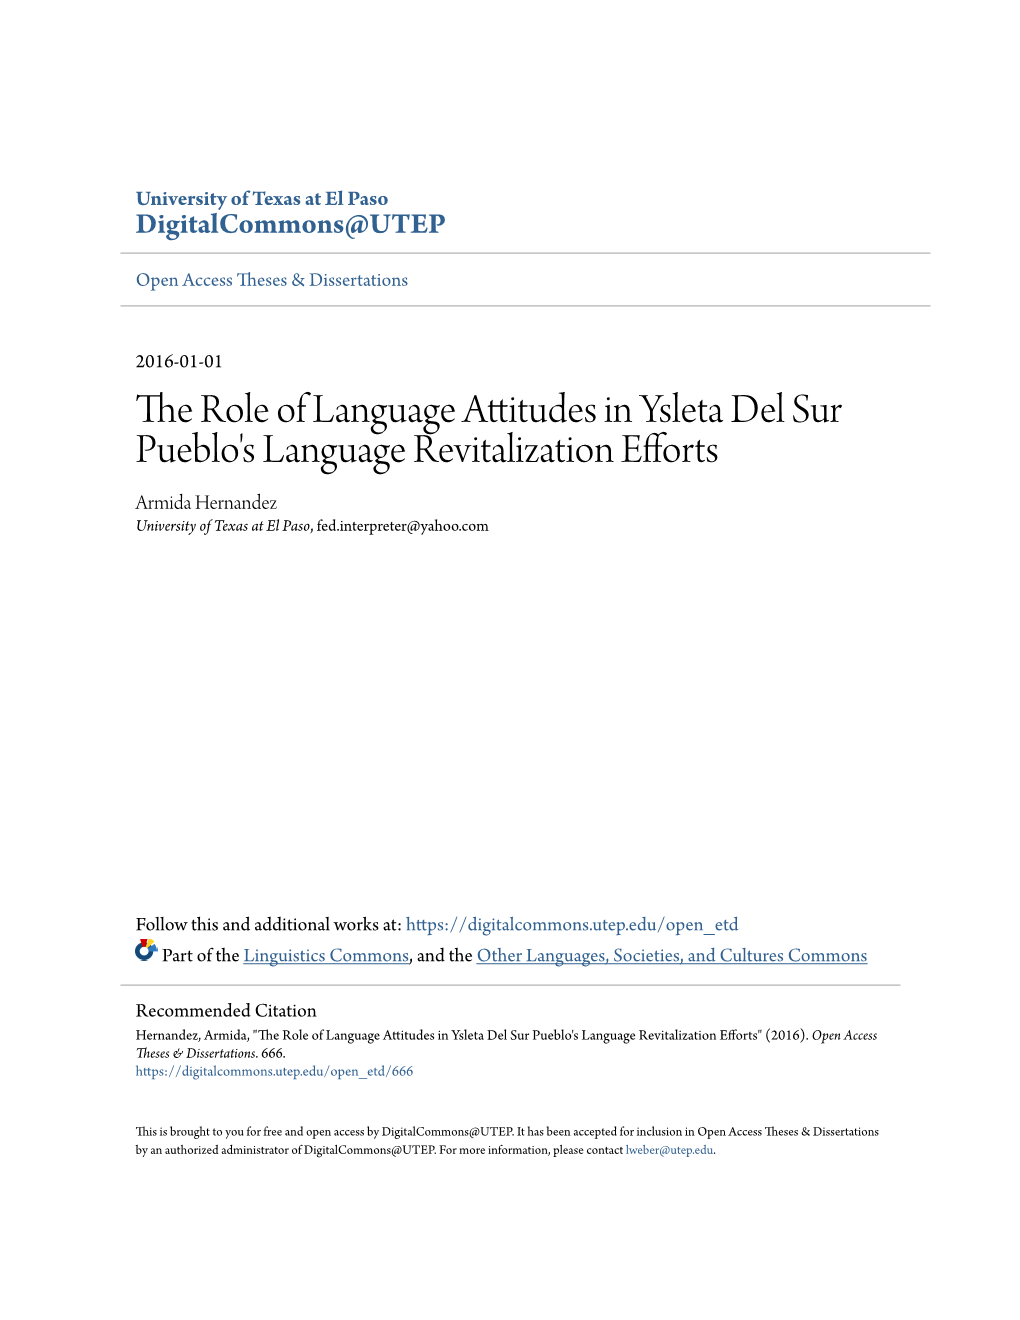 The Role of Language Attitudes in Ysleta Del Sur Pueblo's Language Revitalization Efforts Armida Hernandez University of Texas at El Paso, Fed.Interpreter@Yahoo.Com